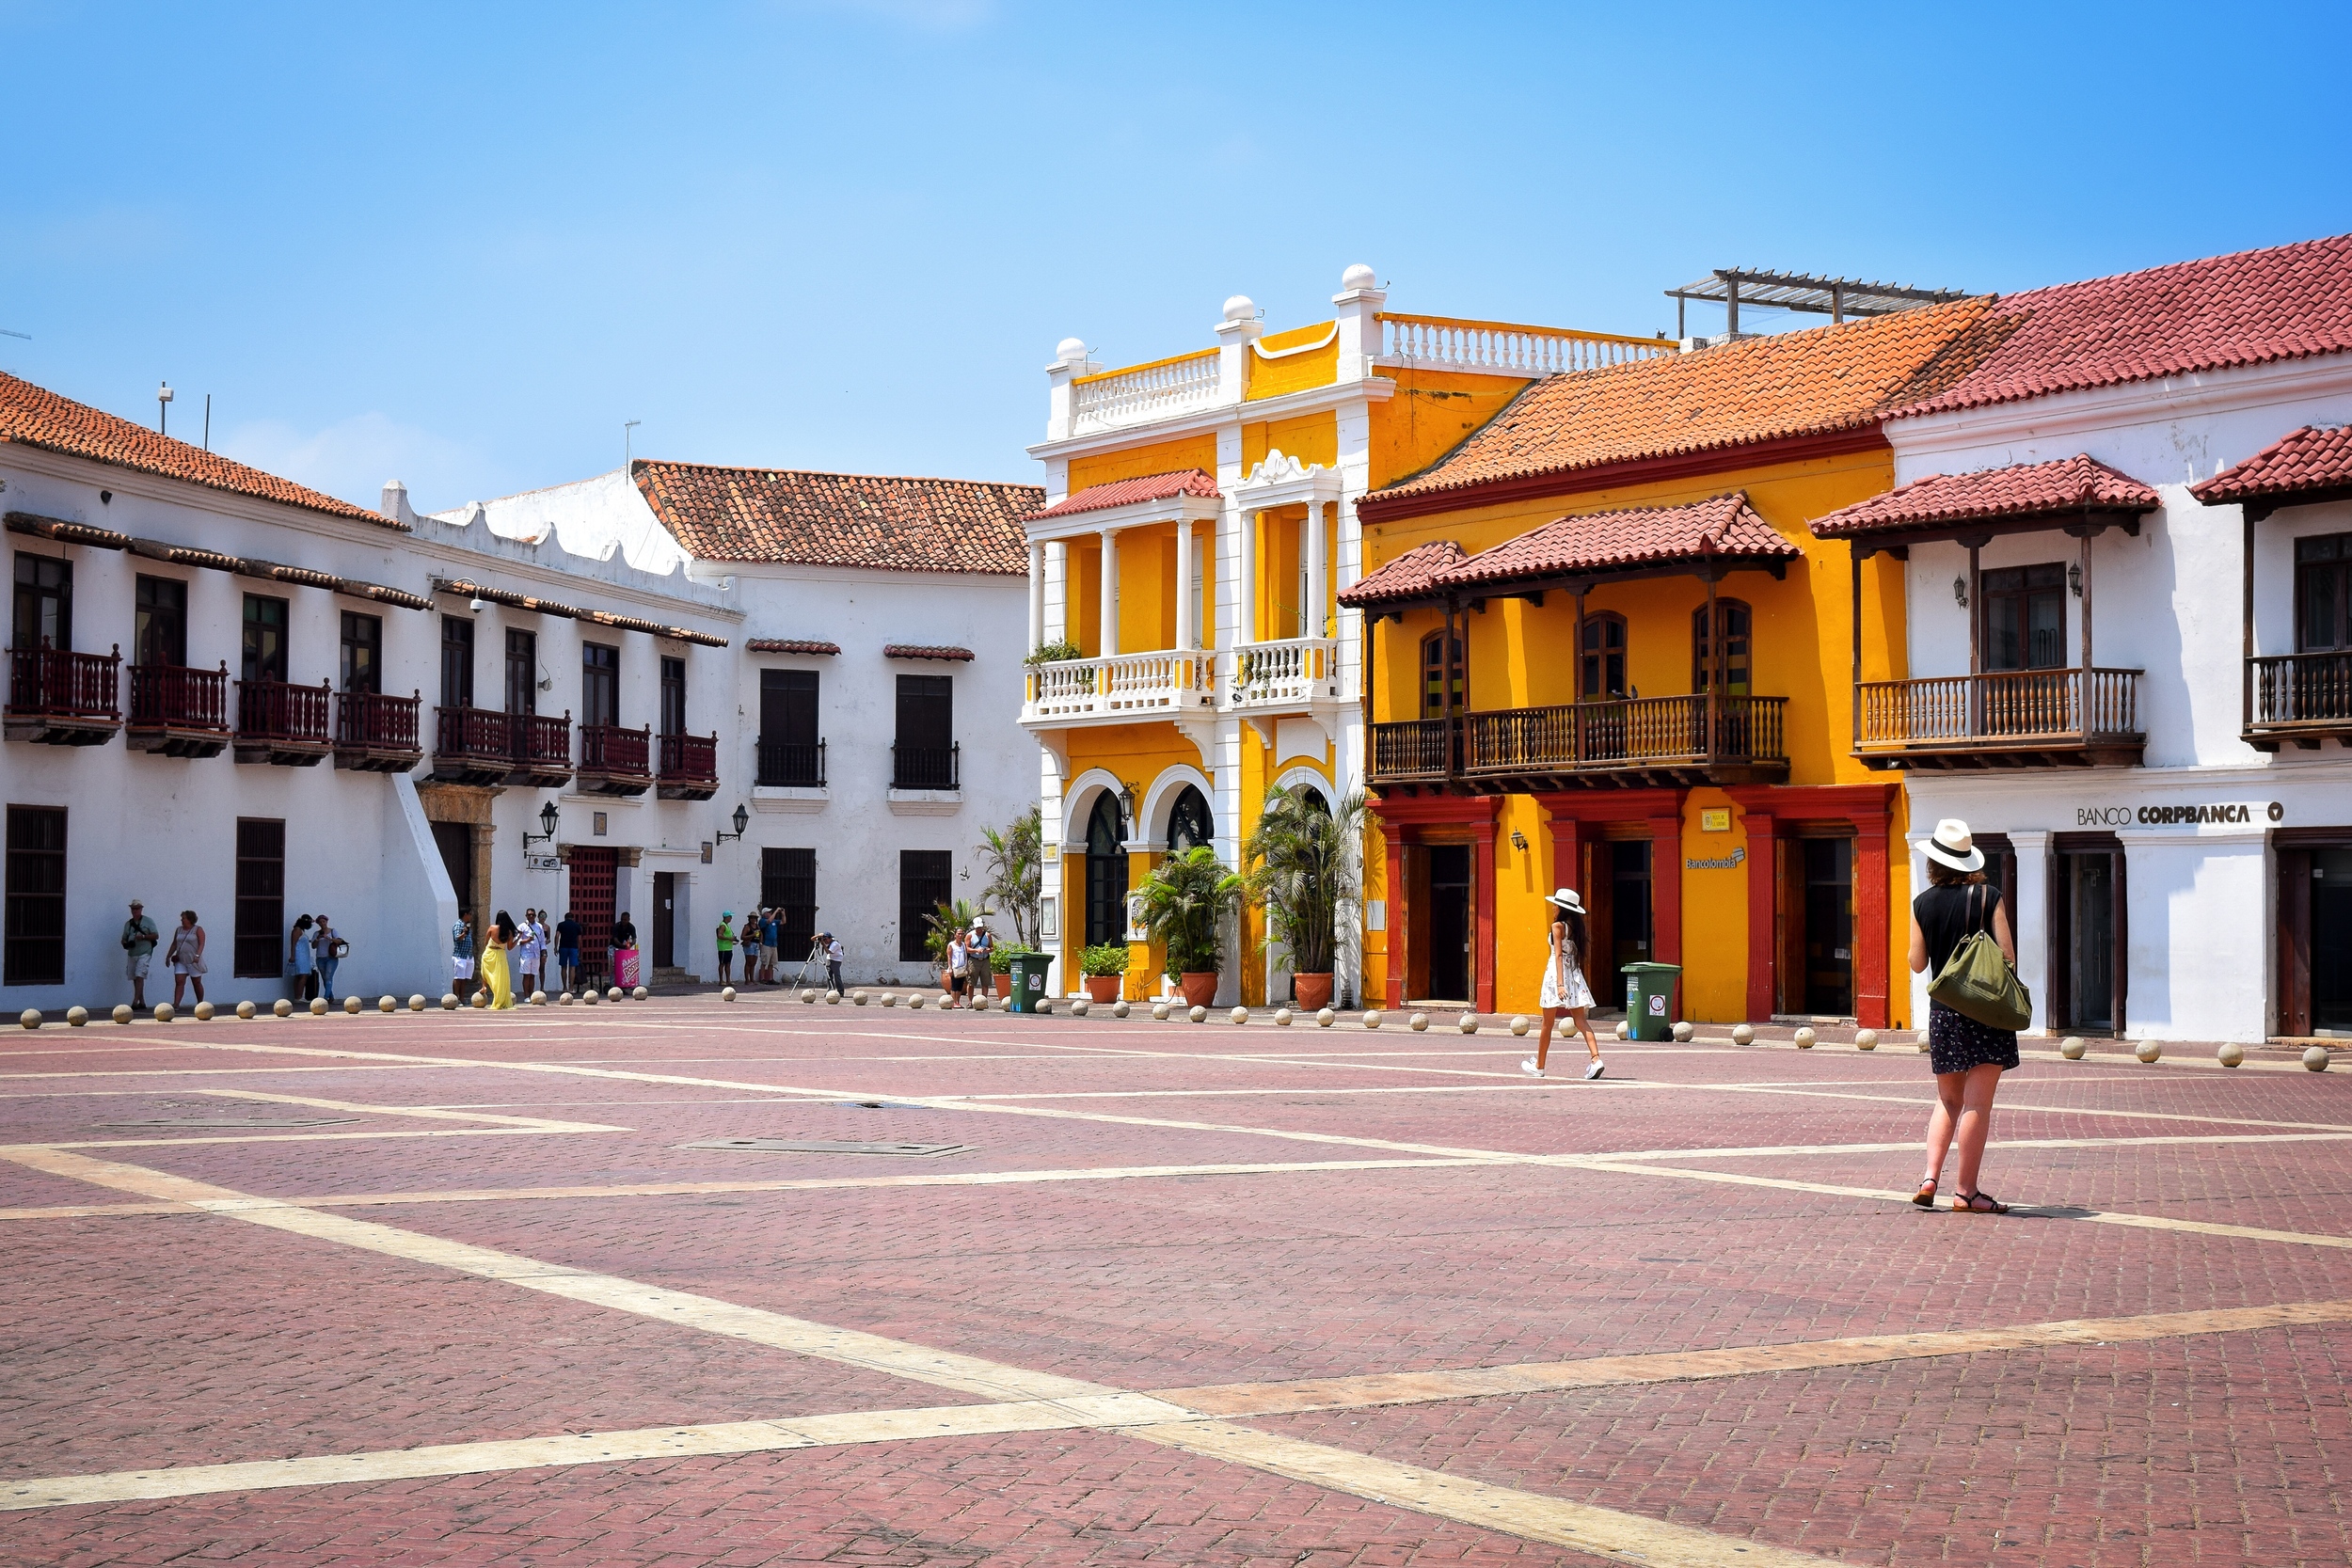 Street Scenes of Cartagena